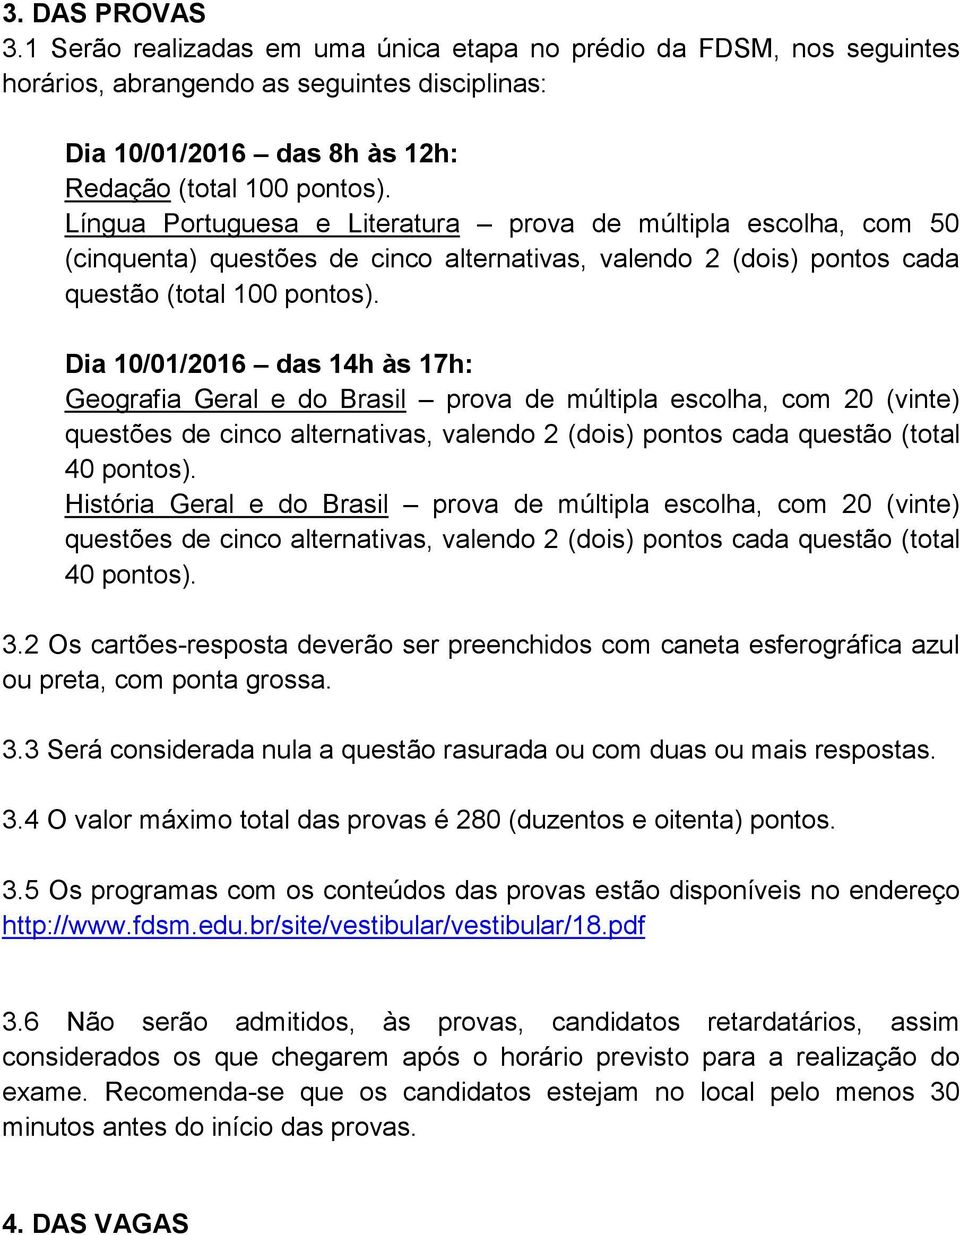 Dia 10/01/2016 das 14h às 17h: Geografia Geral e do Brasil prova de múltipla escolha, com 20 (vinte) questões de cinco alternativas, valendo 2 (dois) pontos cada questão (total 40 pontos).